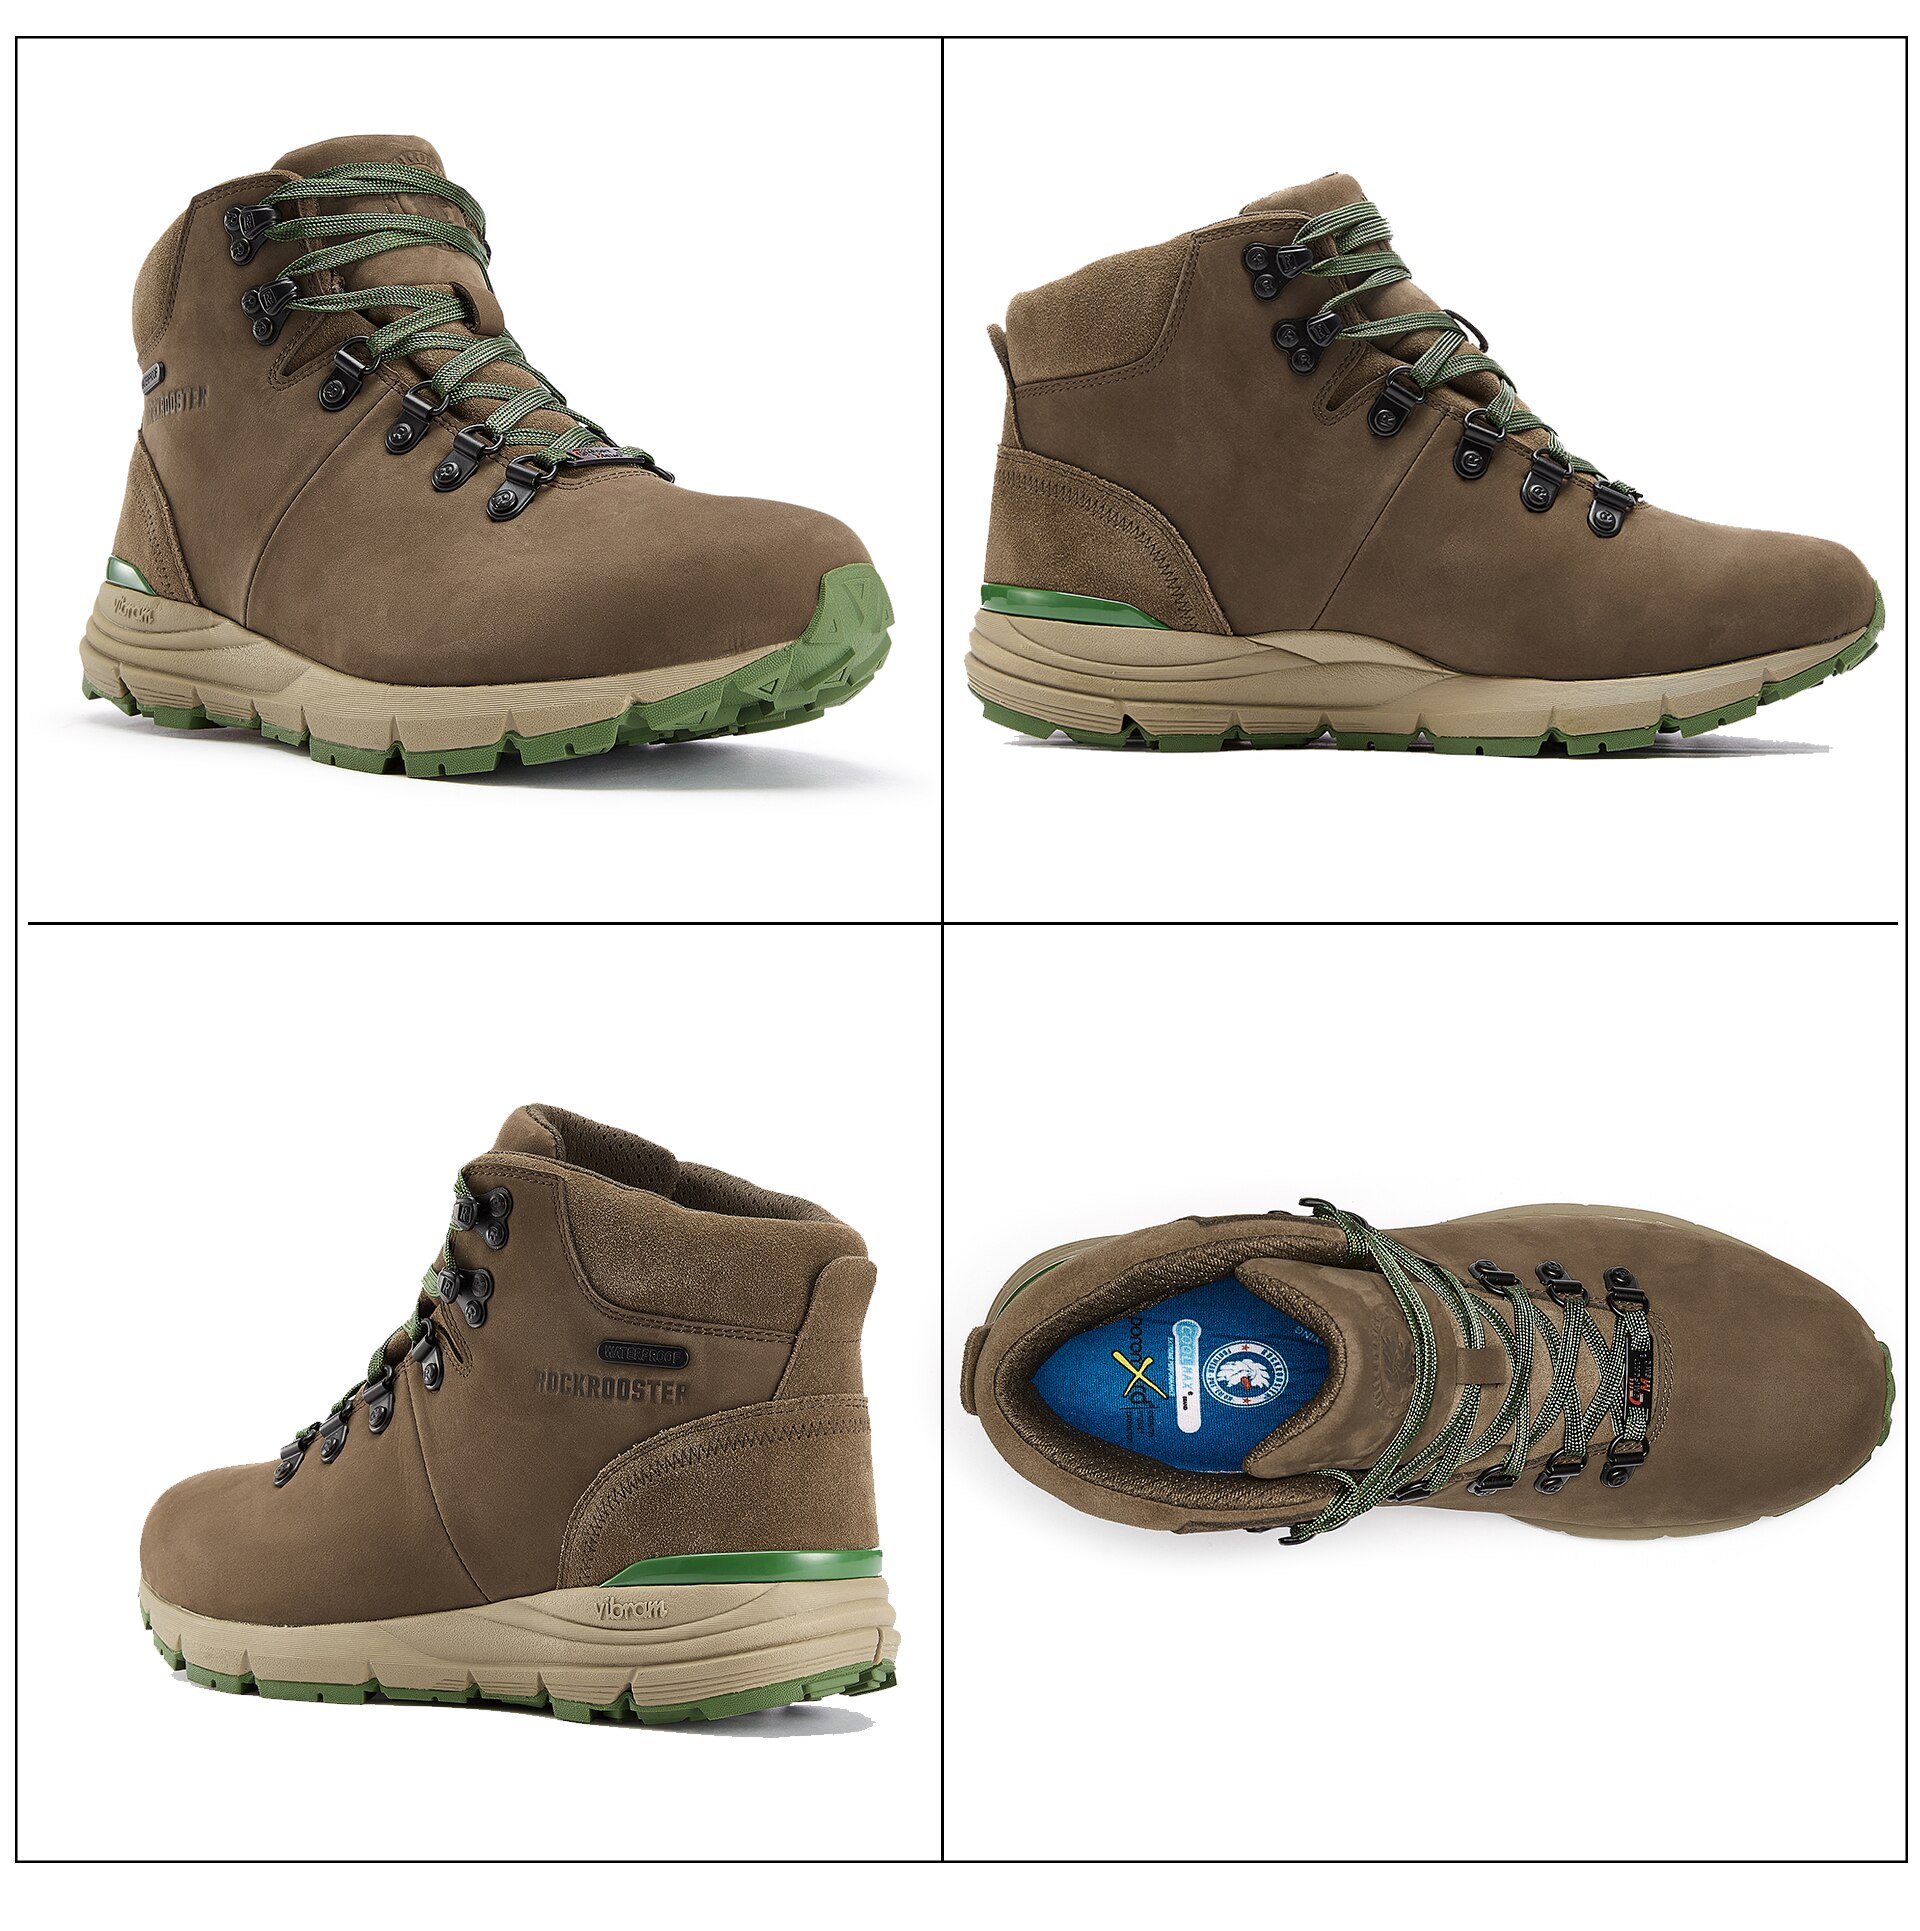 Men's Green and Brown Design Trekking Boots